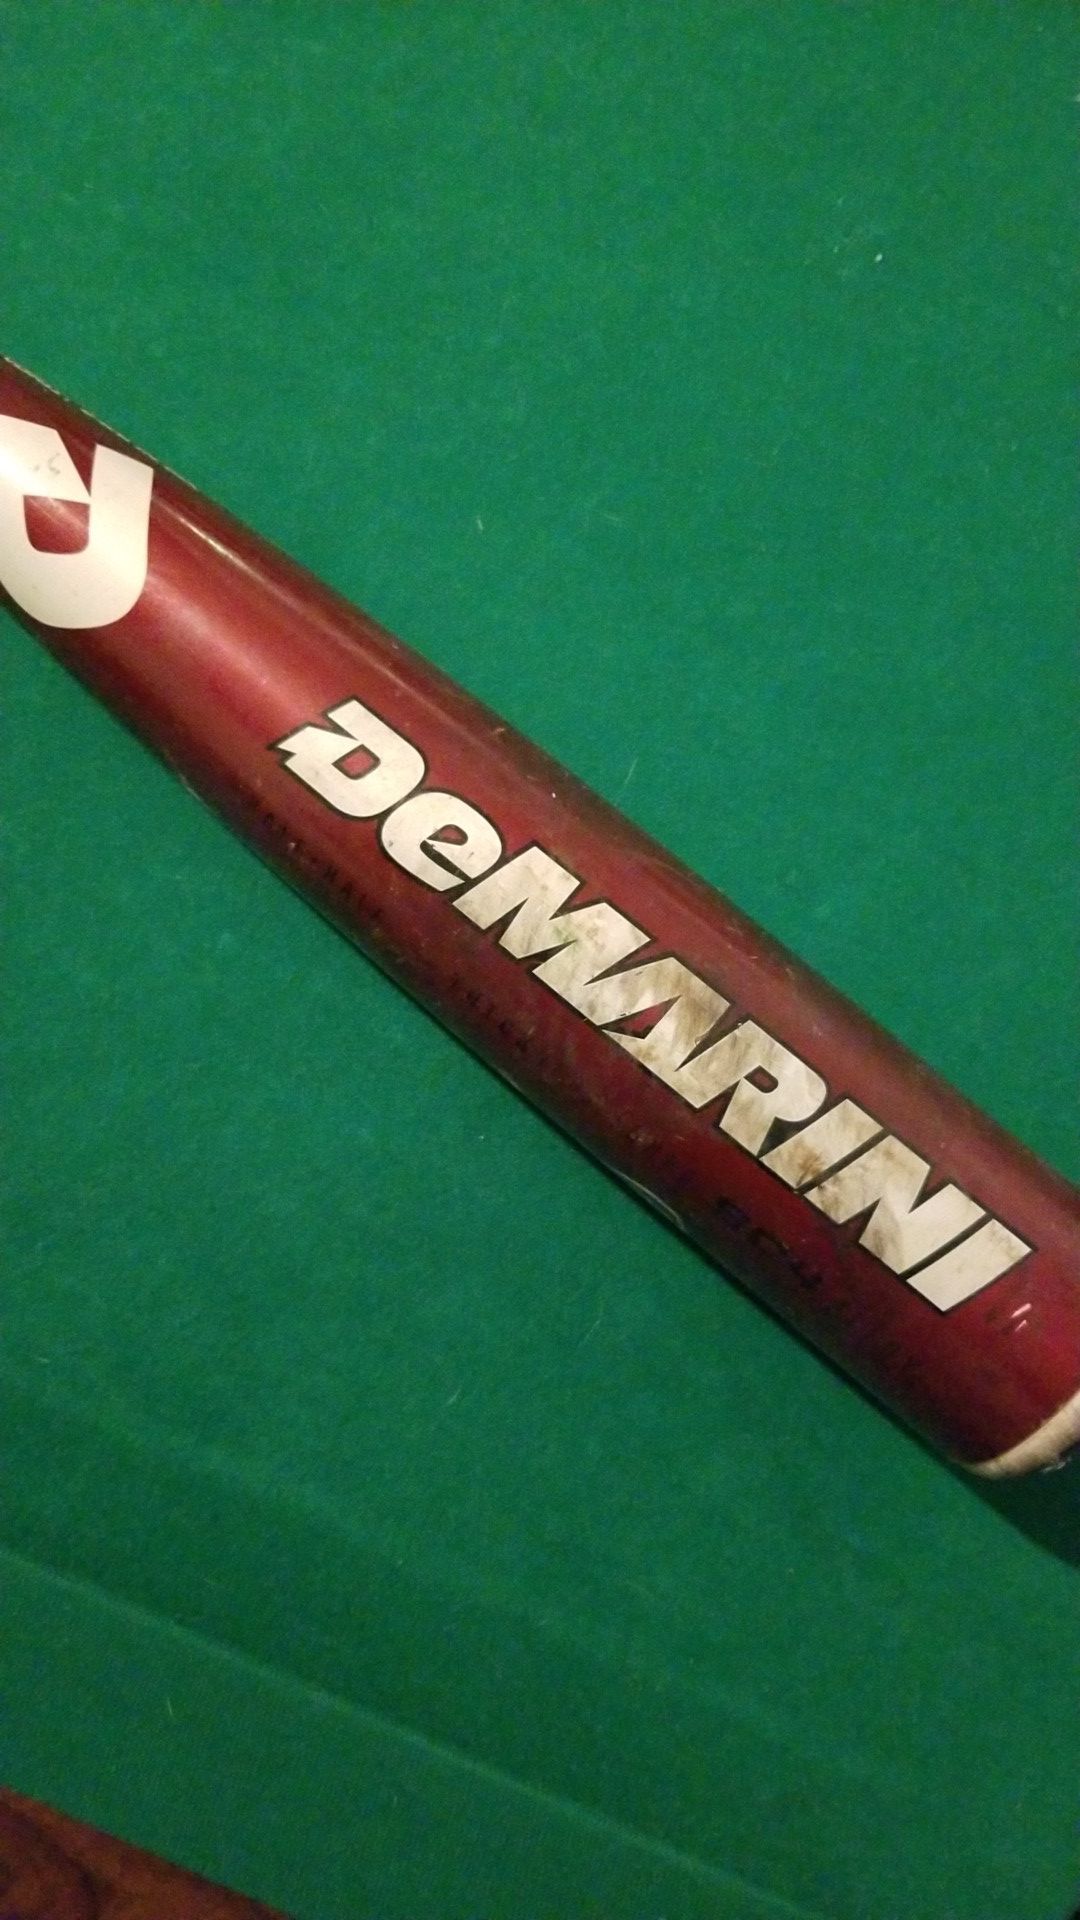 DeMarini voodoo baseball bat.